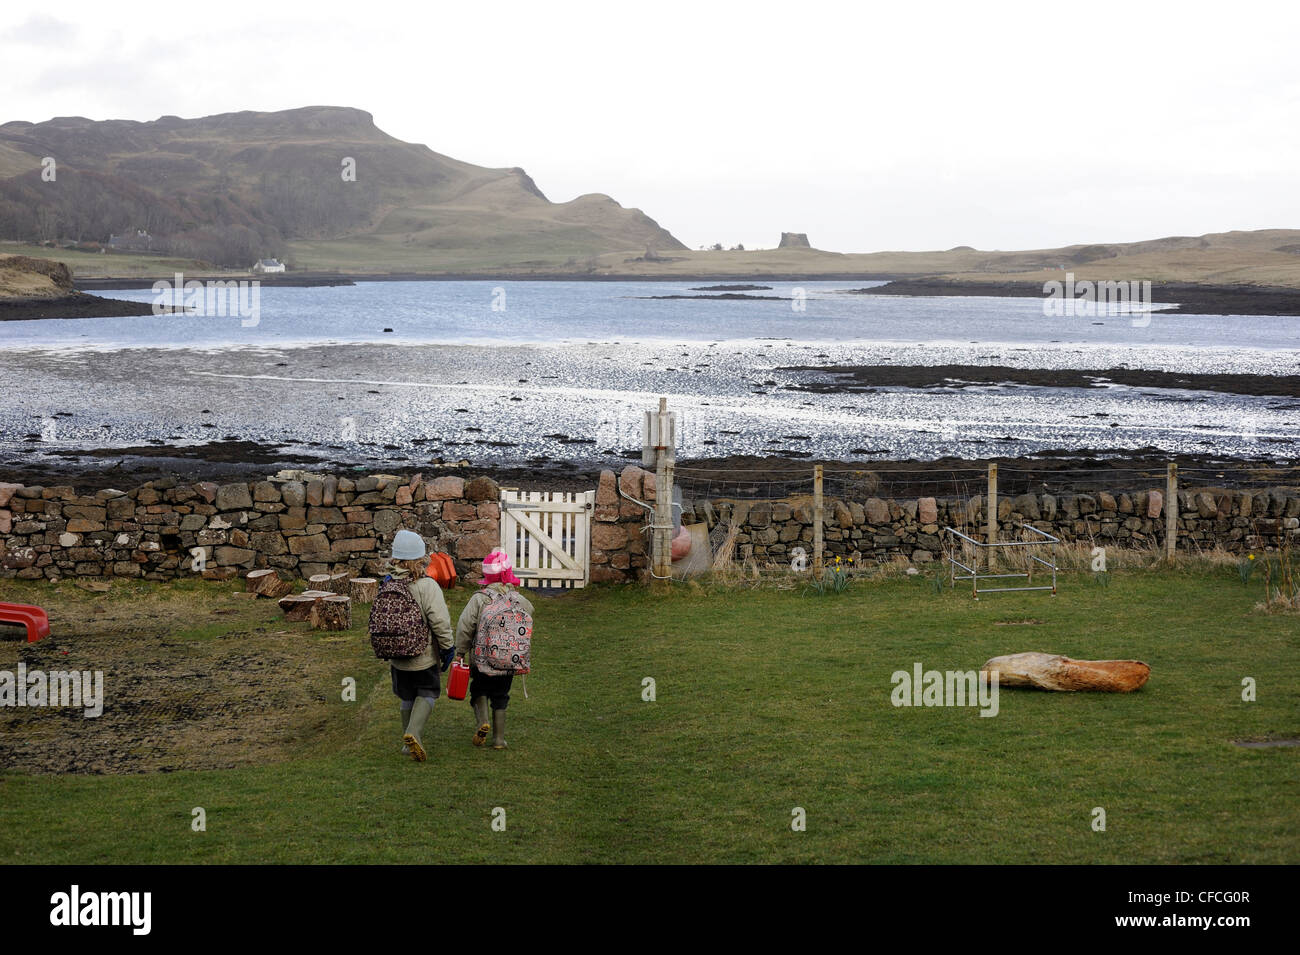 Due dei quattro scolari sulla canna a hometime. L'isola di Canna nelle Ebridi Interne al largo della costa occidentale della Scozia. Foto Stock